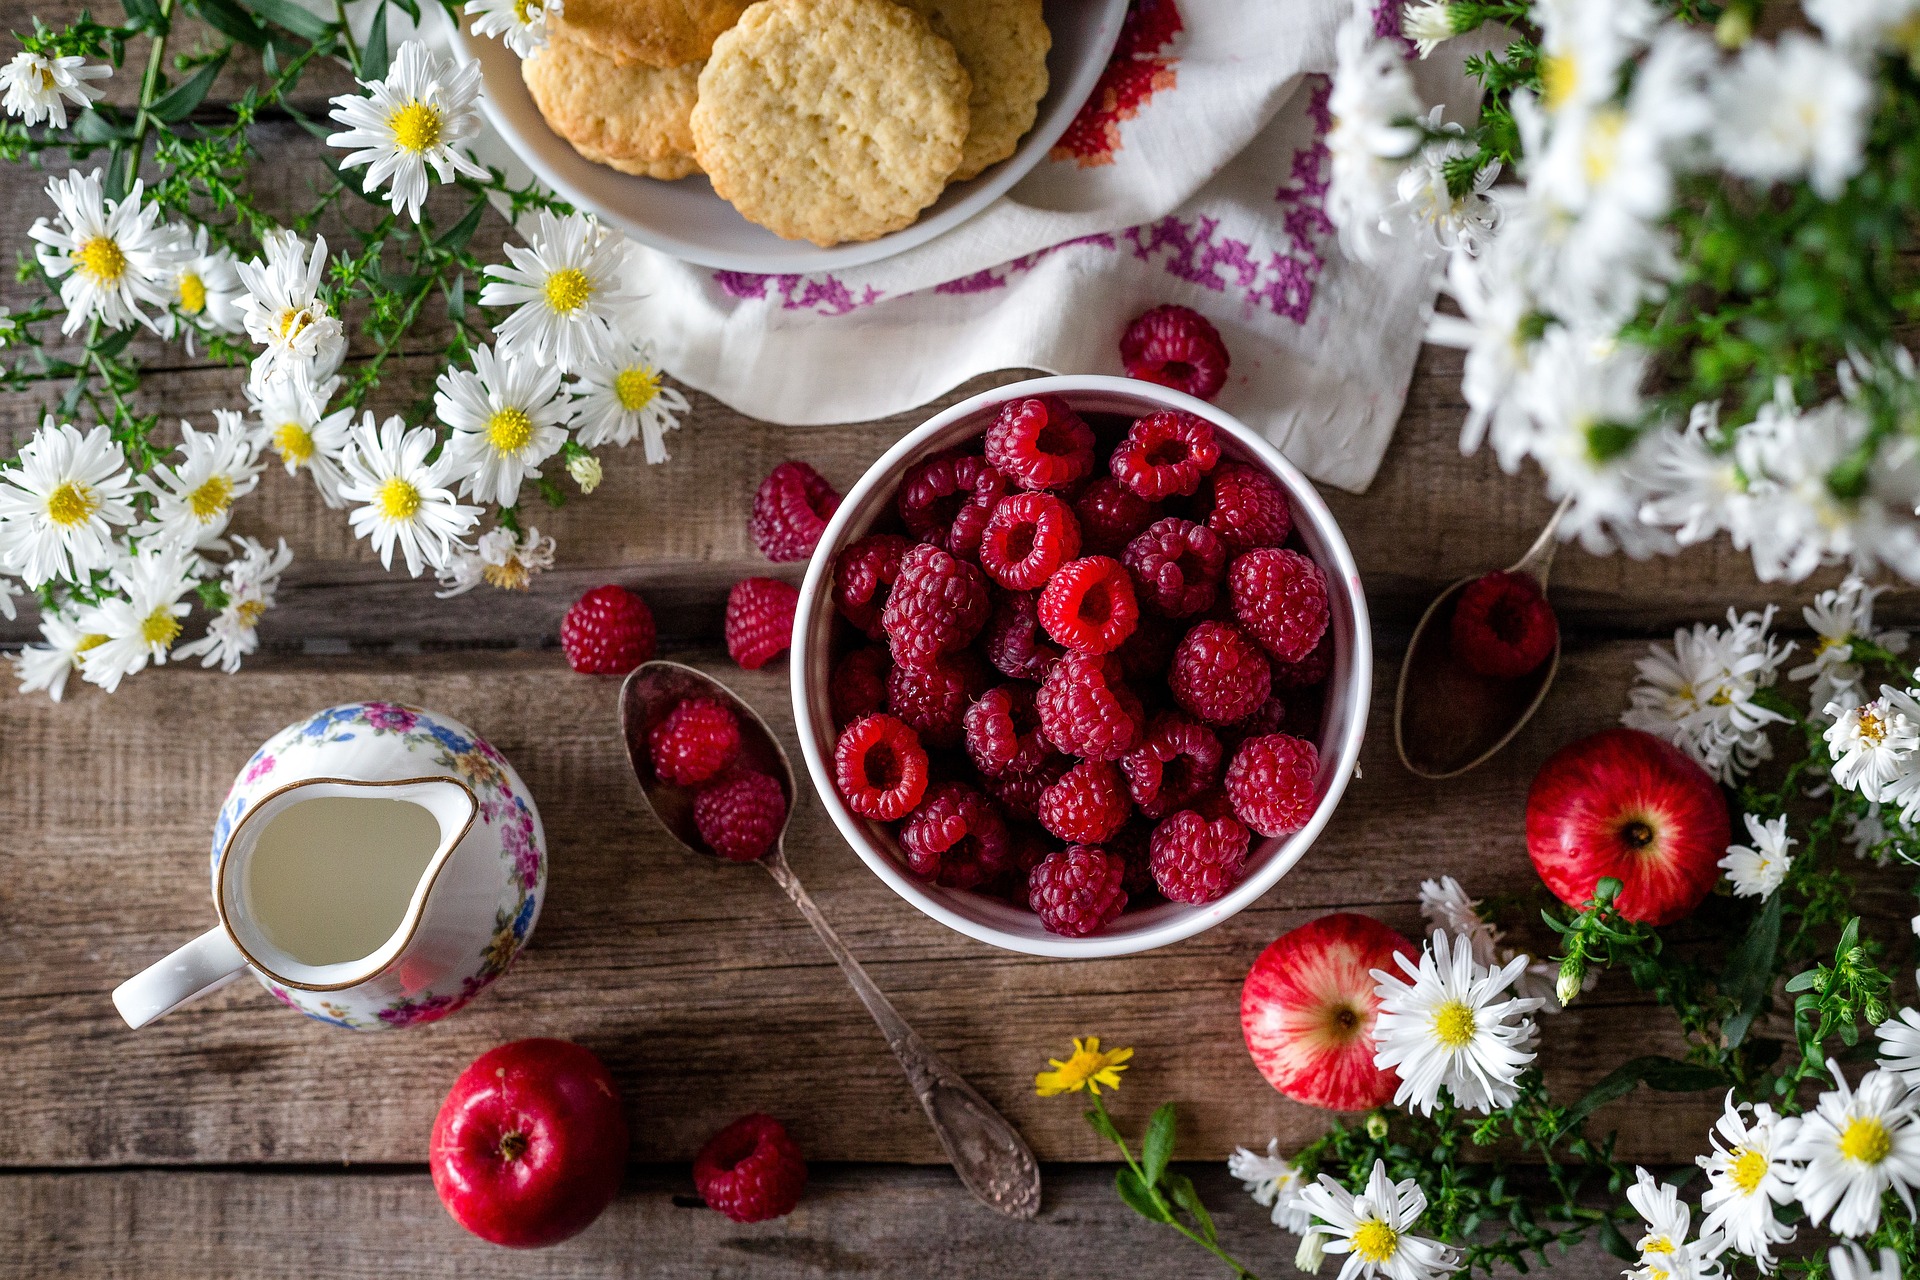 하얀 그릇에 산딸기를 가득 담고&#44; 그 주위에 빵과 사과와 꿀을 담은 단지&#44; 그리고 꽃으로 장식을 한 사진 - 소양인(少陽人)에게 맞는 음식